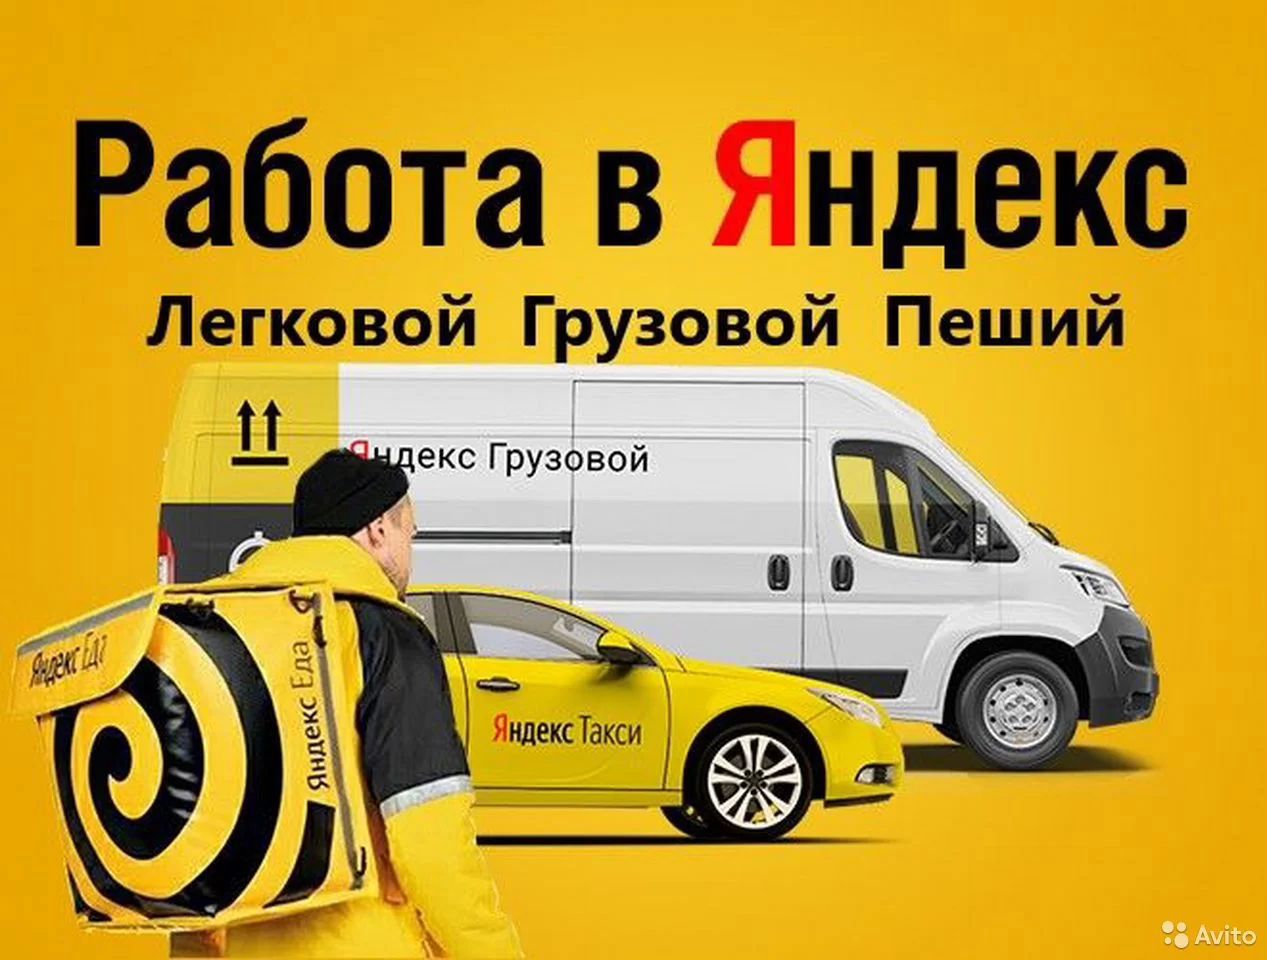 Такси доставка. Работа такси отзывы водителей москва